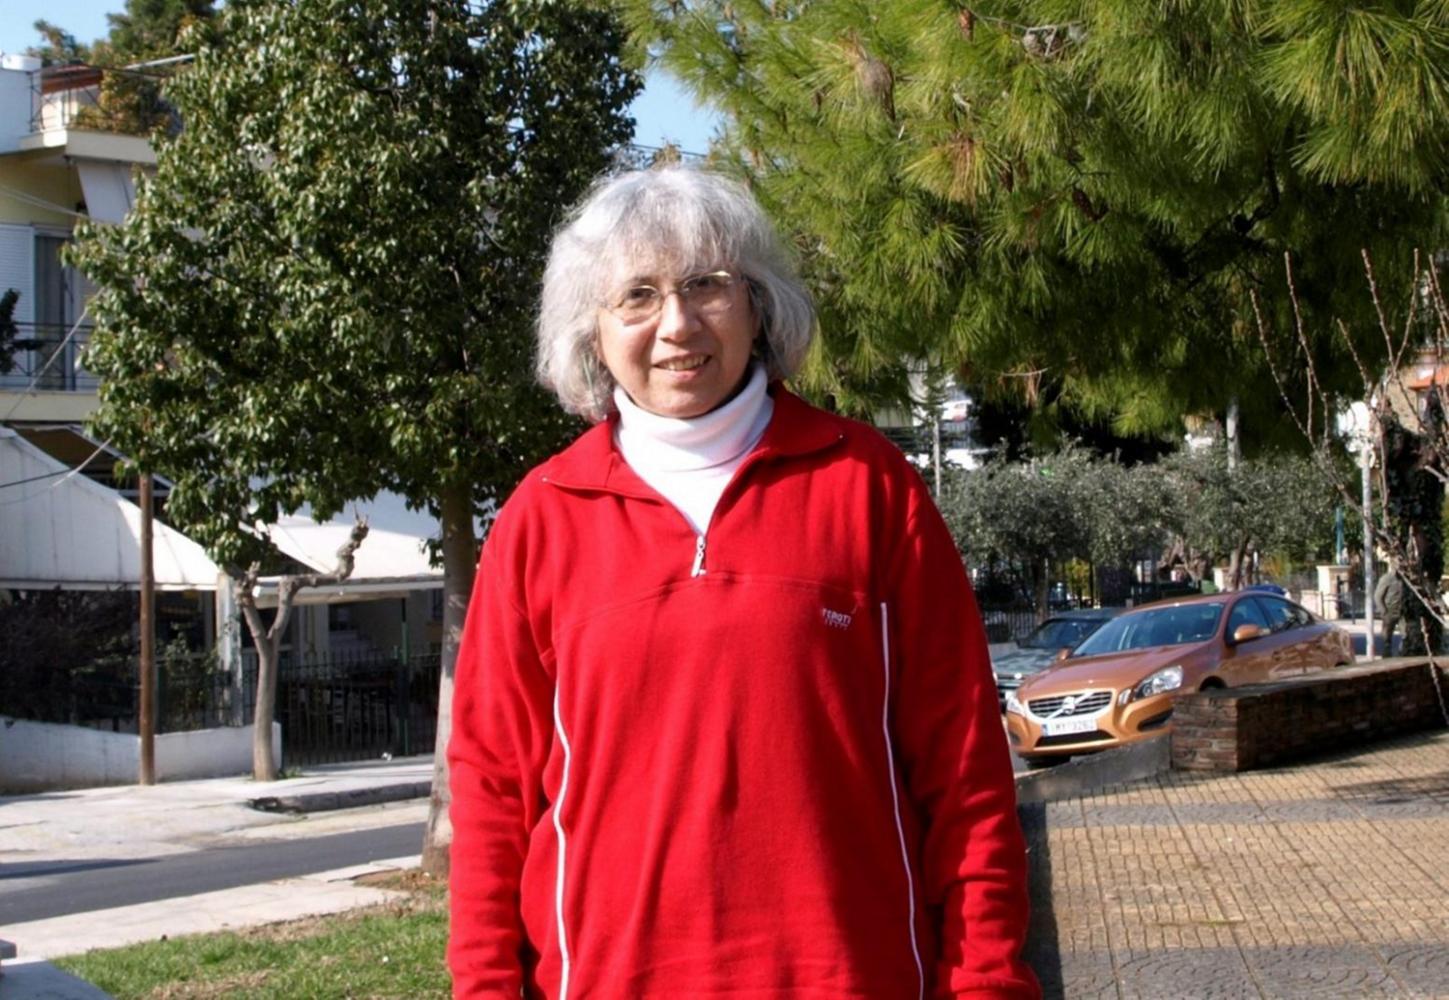 Ζωζώ Χριστοδούλου: Η πρώτη Ελληνίδα που τερμάτισε στον Μαραθώνιο νικώντας χλεύη και στερεότυπα